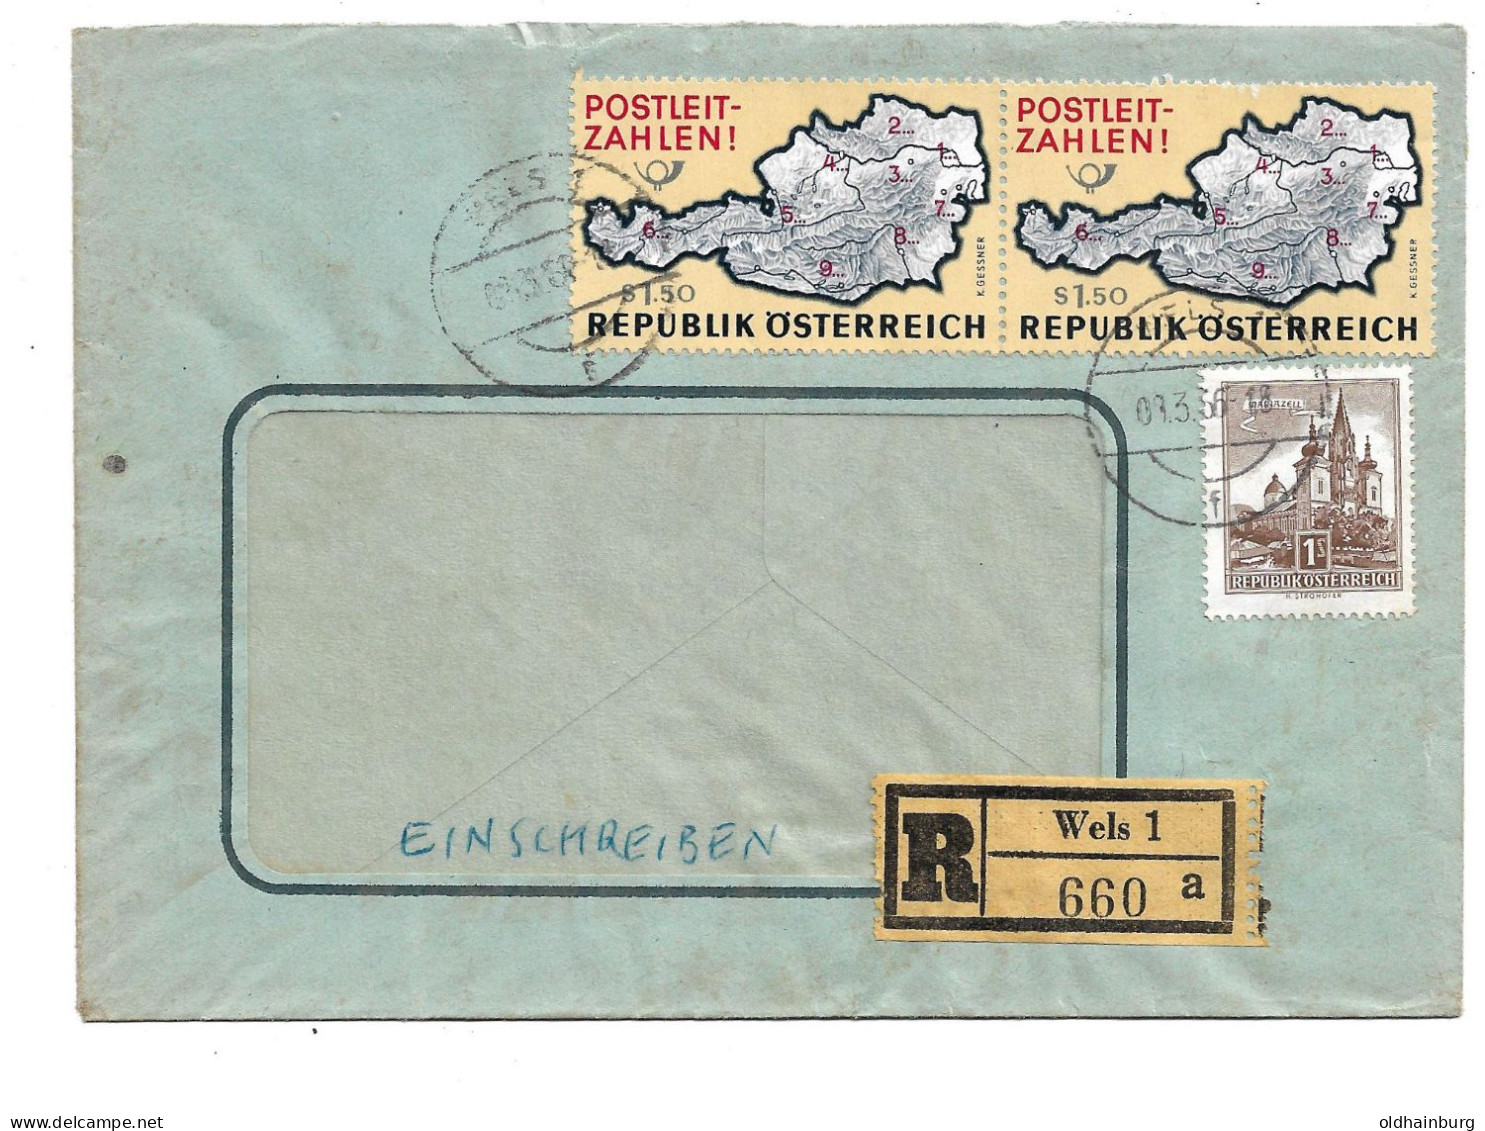 0415n: Österreich 1966, Postleitzahlen- Marke Auf Rekobrief Wels 1 - Postleitzahl